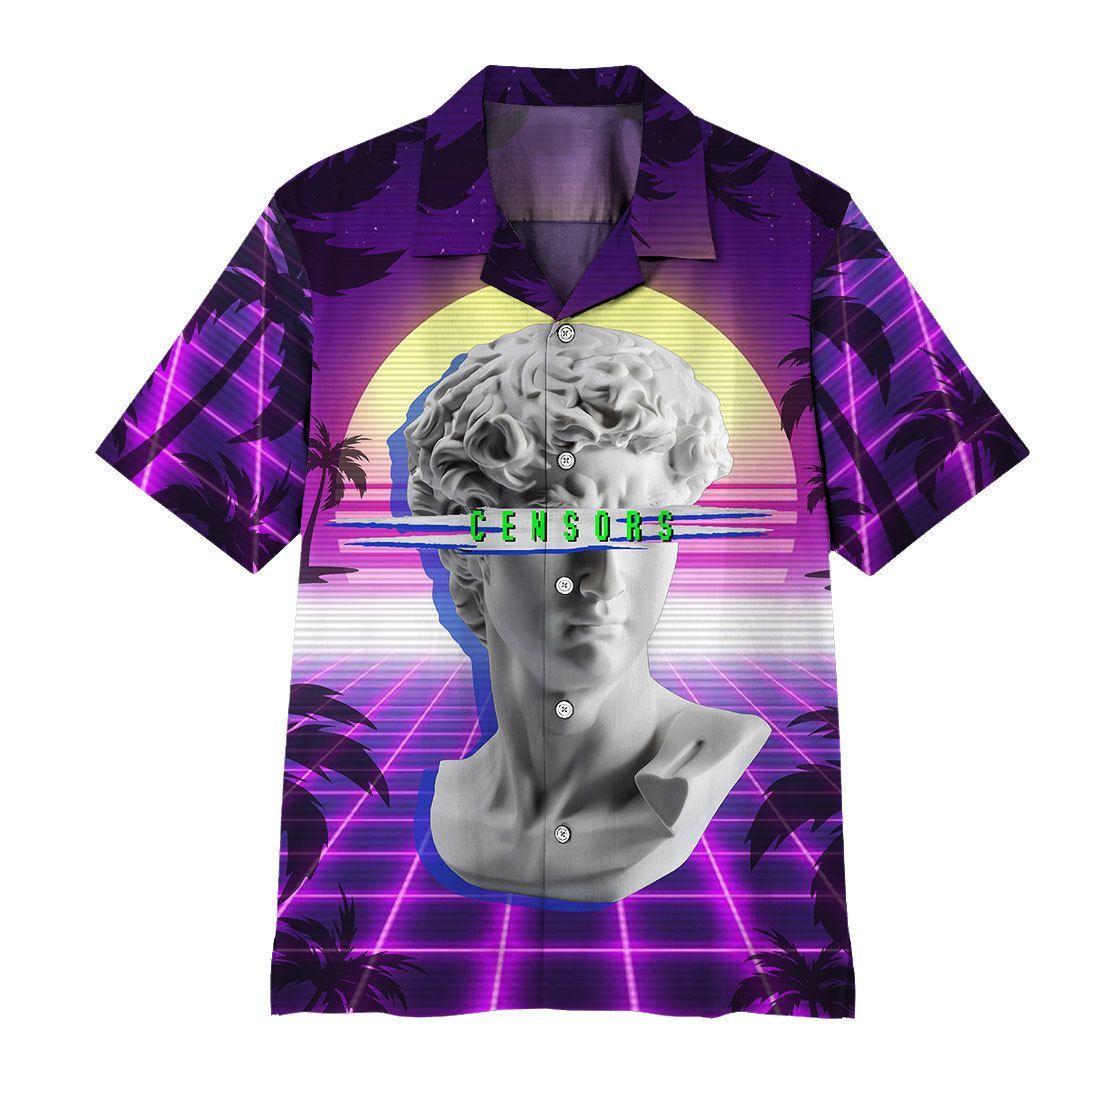 Camiseta de Alien planetoid LV-426 cyberpunk para hombre, ropa vintage,  camisetas gráficas, ropa de verano - AliExpress